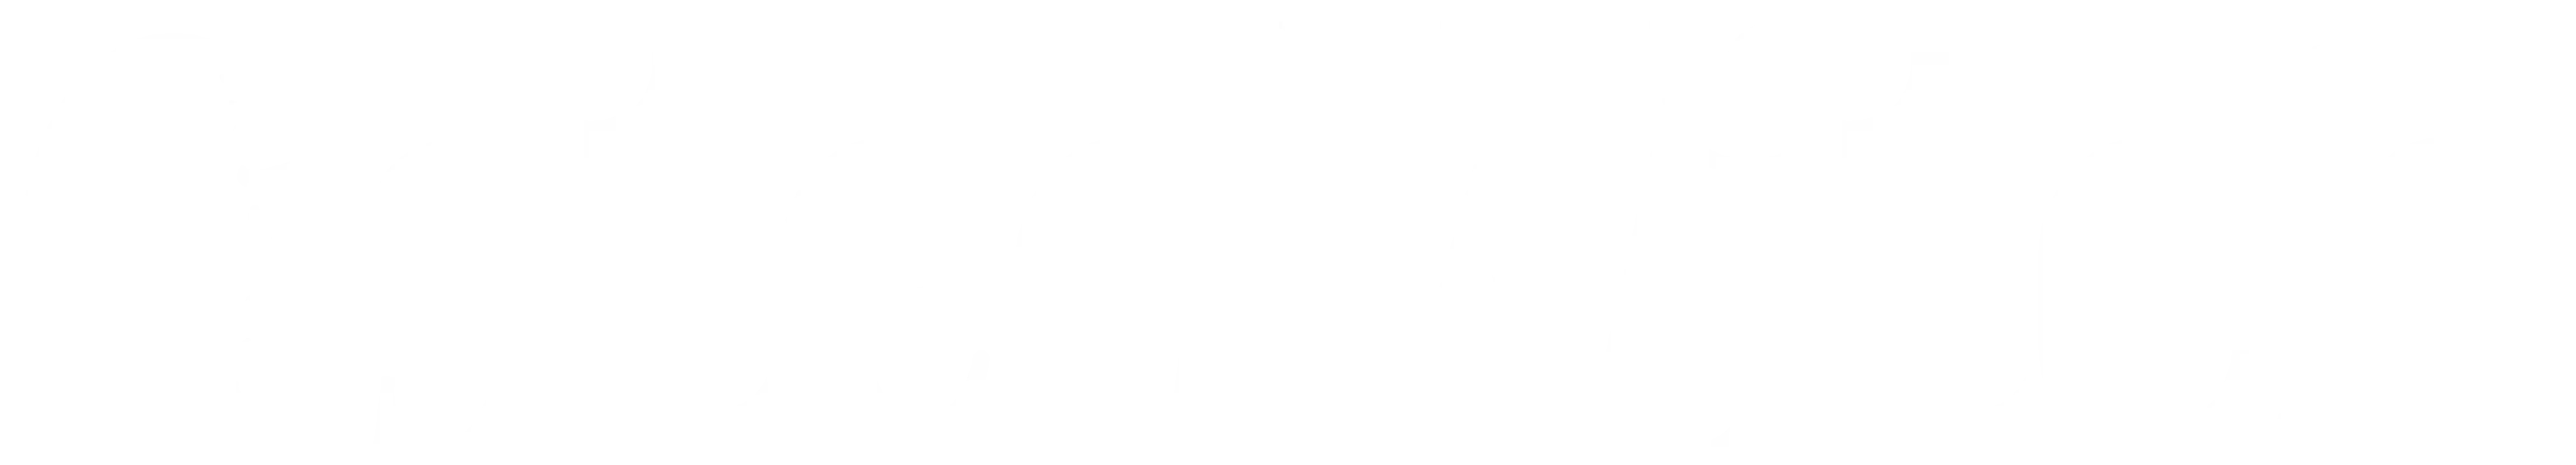 OsteOwitch logója